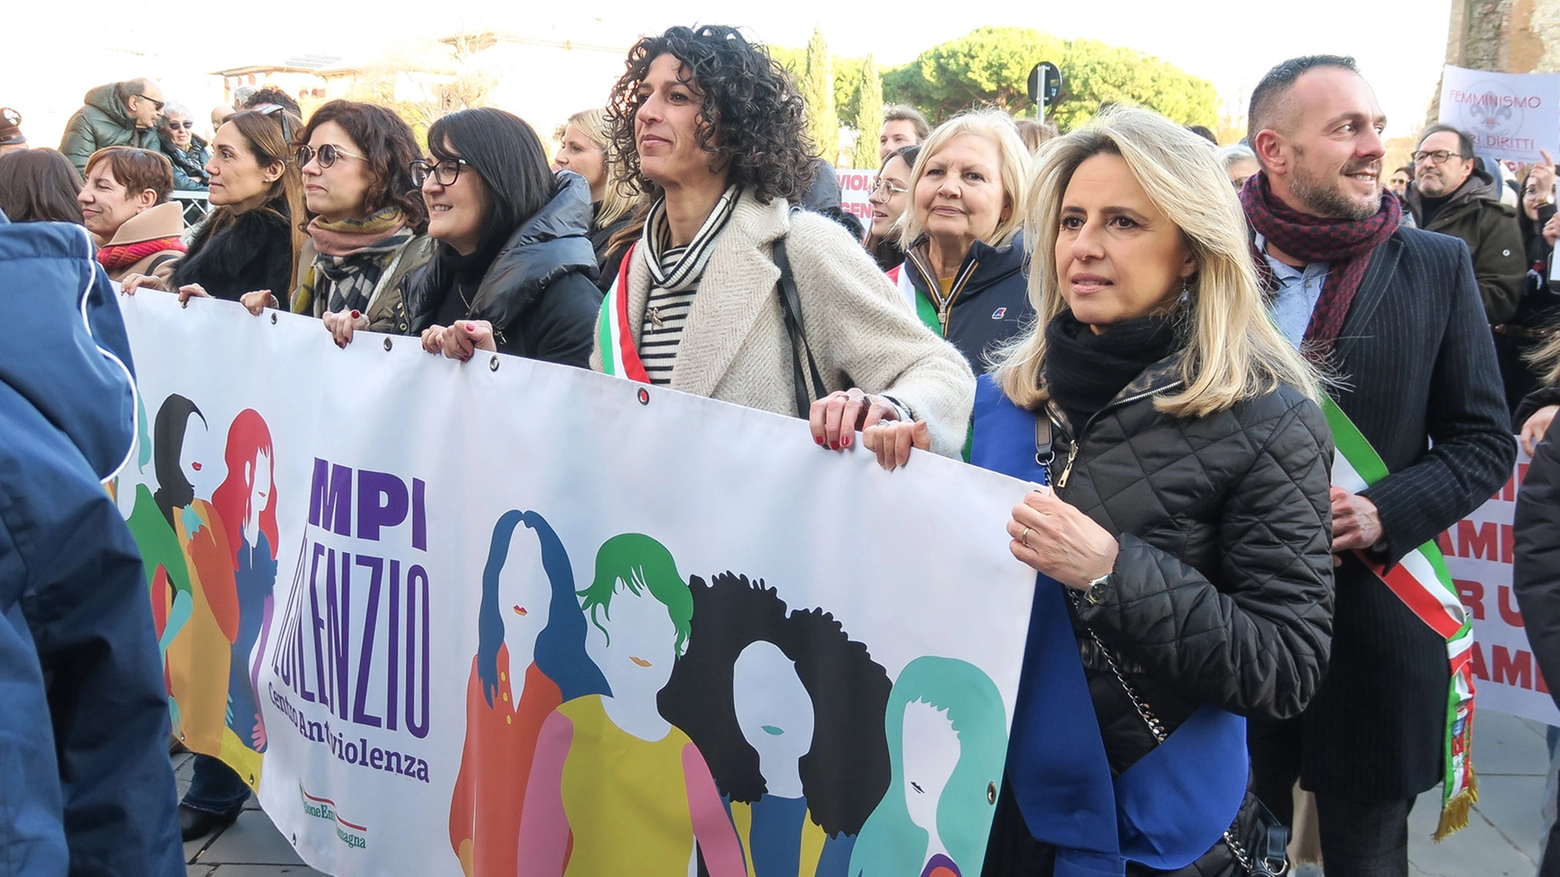 La vicesindaca di Rimini Chiara Bellini in marcia contro la violenza di genere